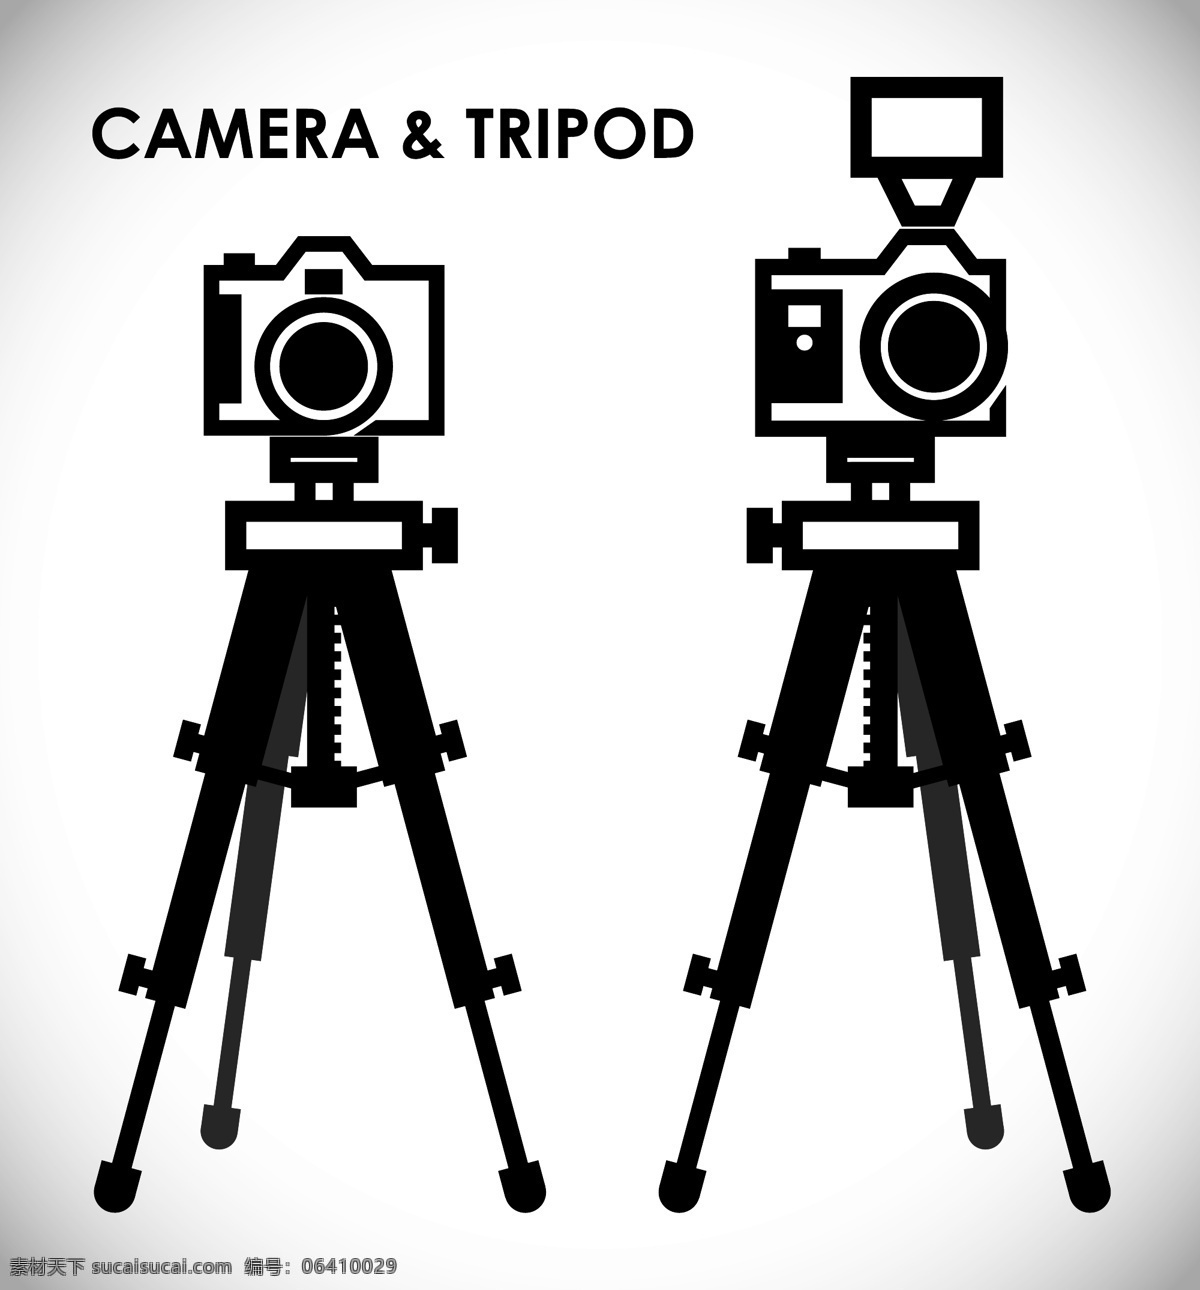 相机 单反 单反相机 数码单反 摄影器材 摄影设备 佳能 尼康 数码相机 生活用品 生活百科